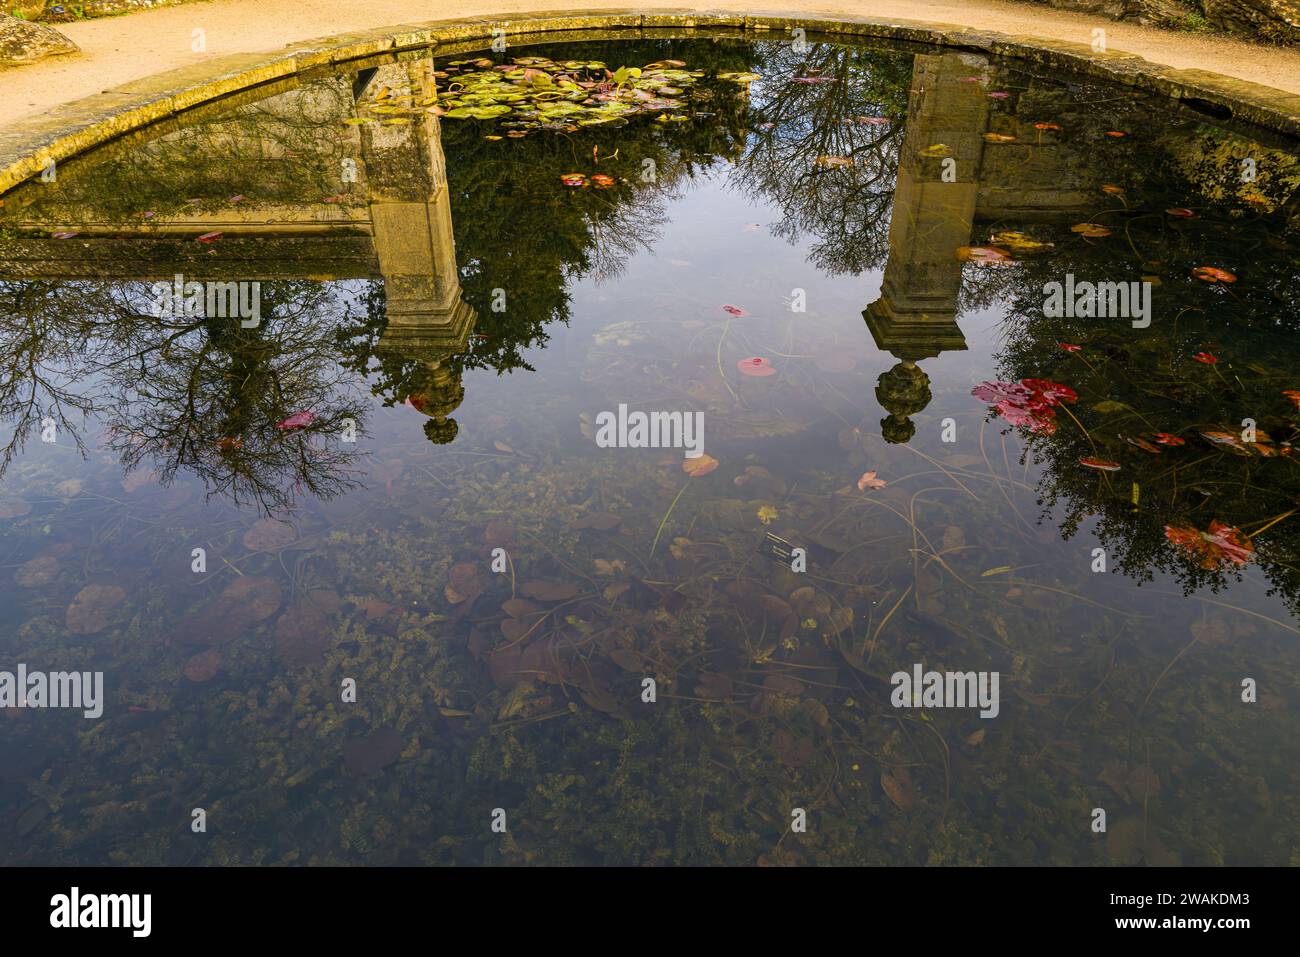 Reflets dans l'un des étangs des jardins botaniques d'Oxford, Angleterre Banque D'Images